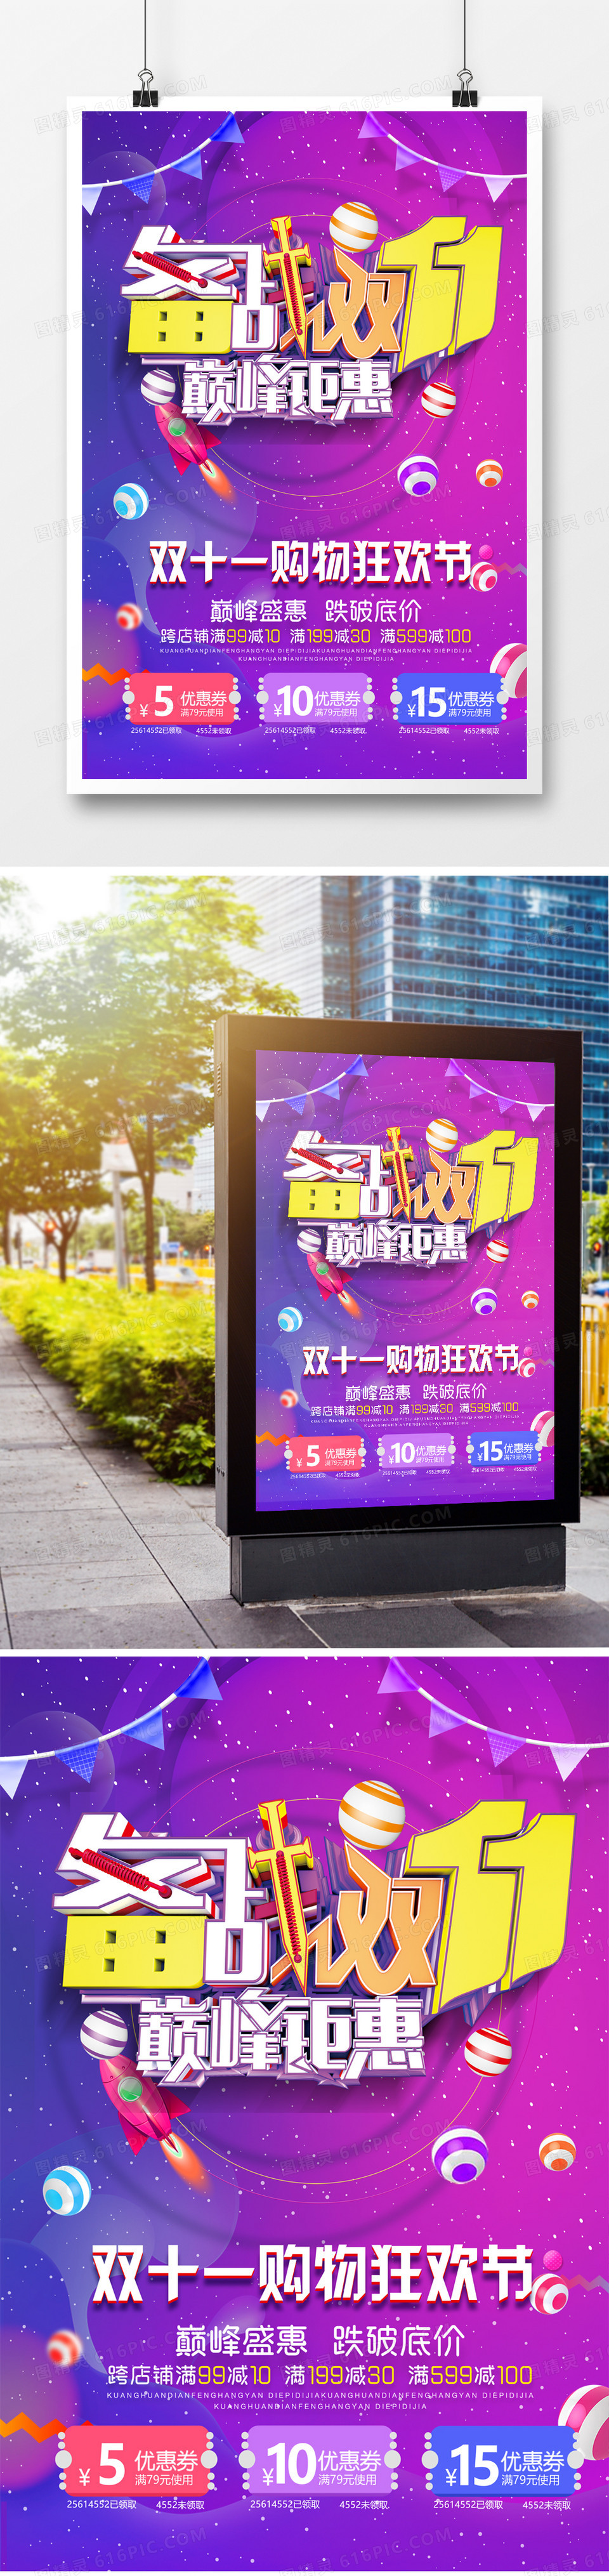 紫色炫彩双十一购物狂欢节宣传海报设计